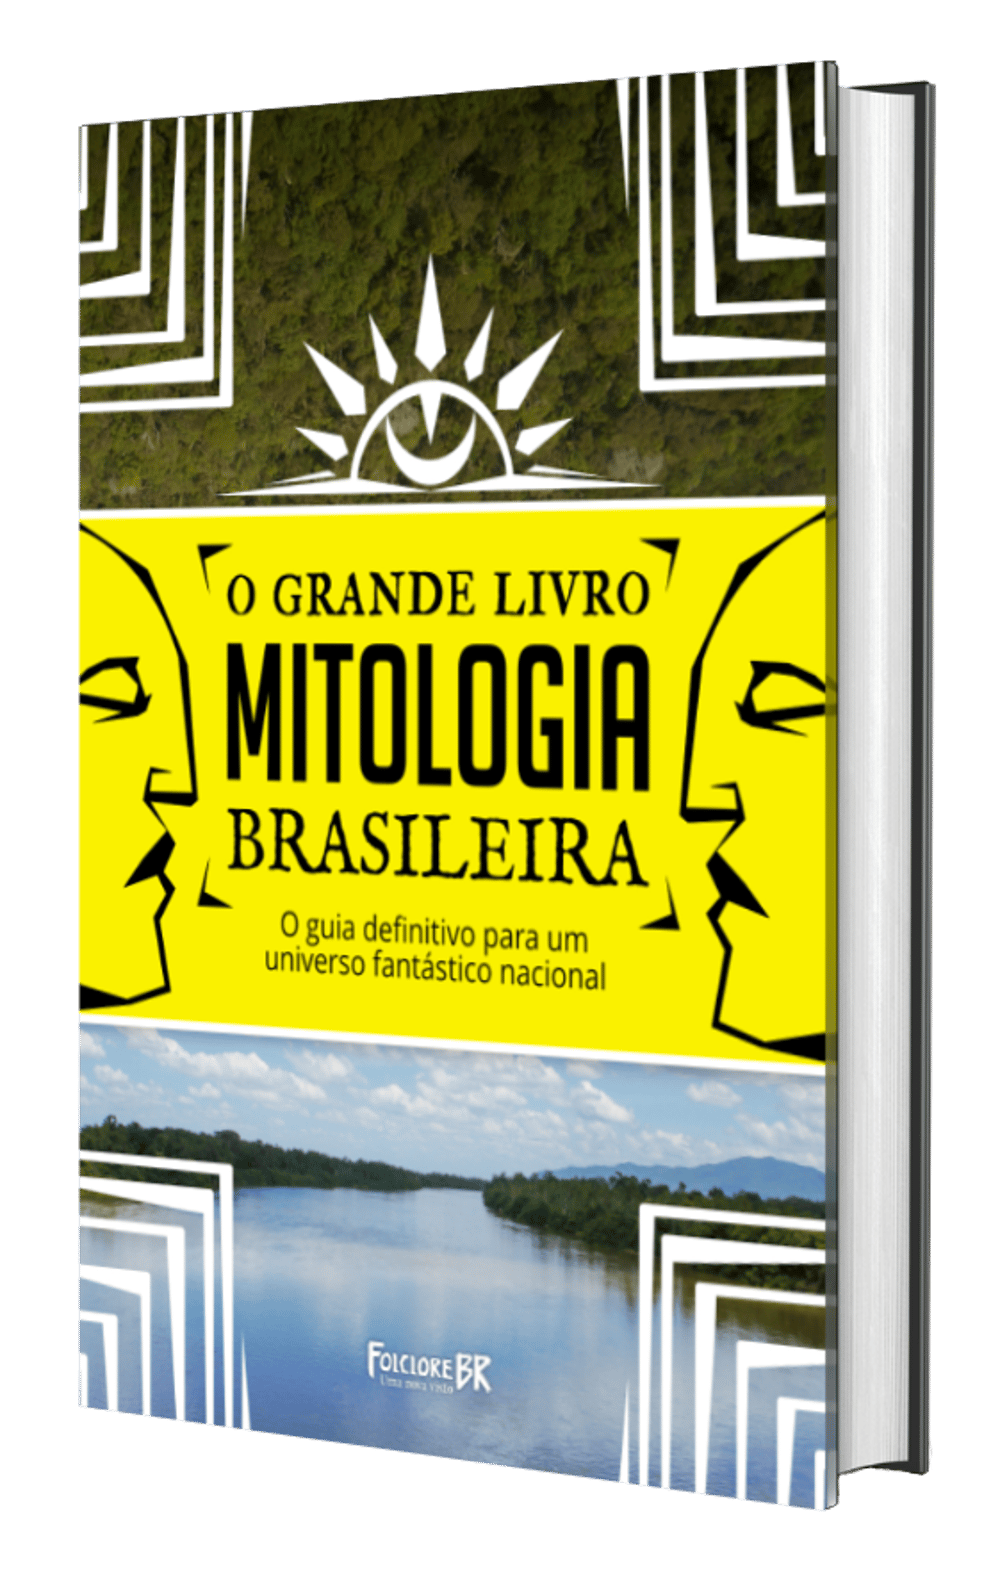 O grande livro da Mitologia Brasileira - Folclore BR